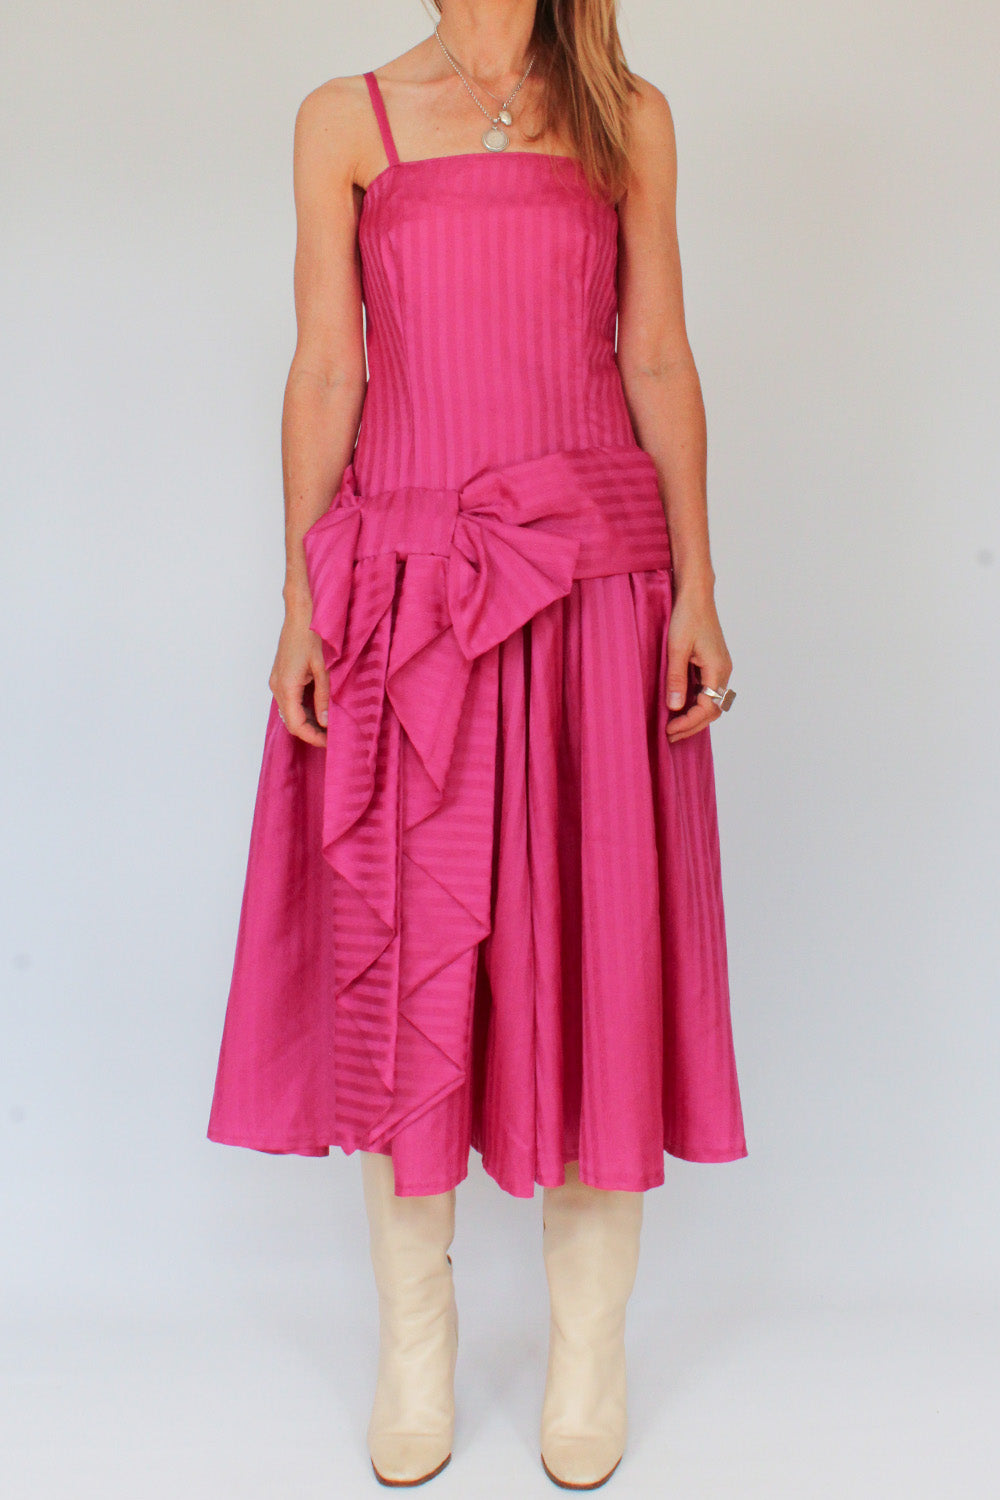 Vintage 80s jurk met grote strik